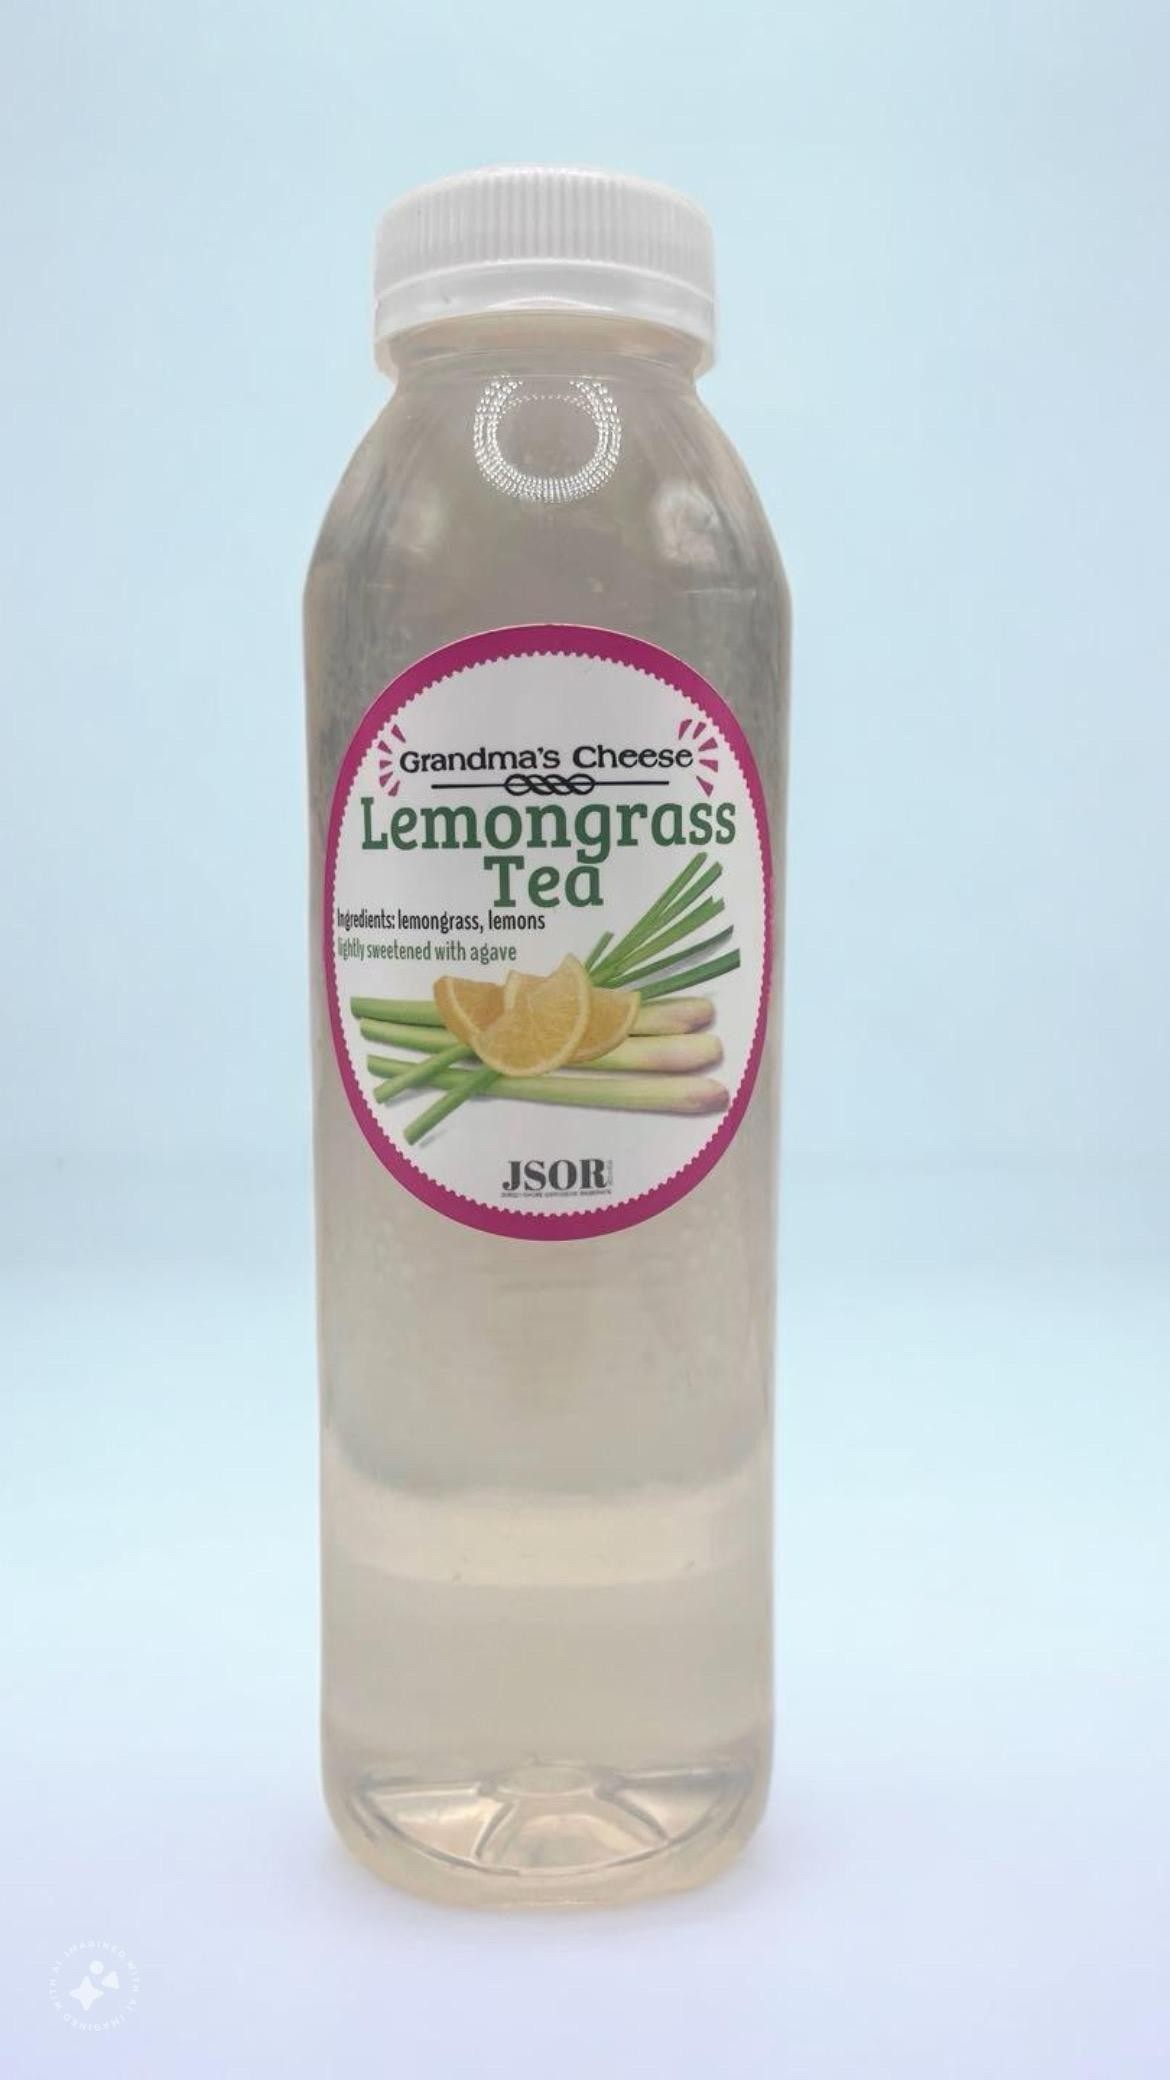 LemonGrass Iced Tea